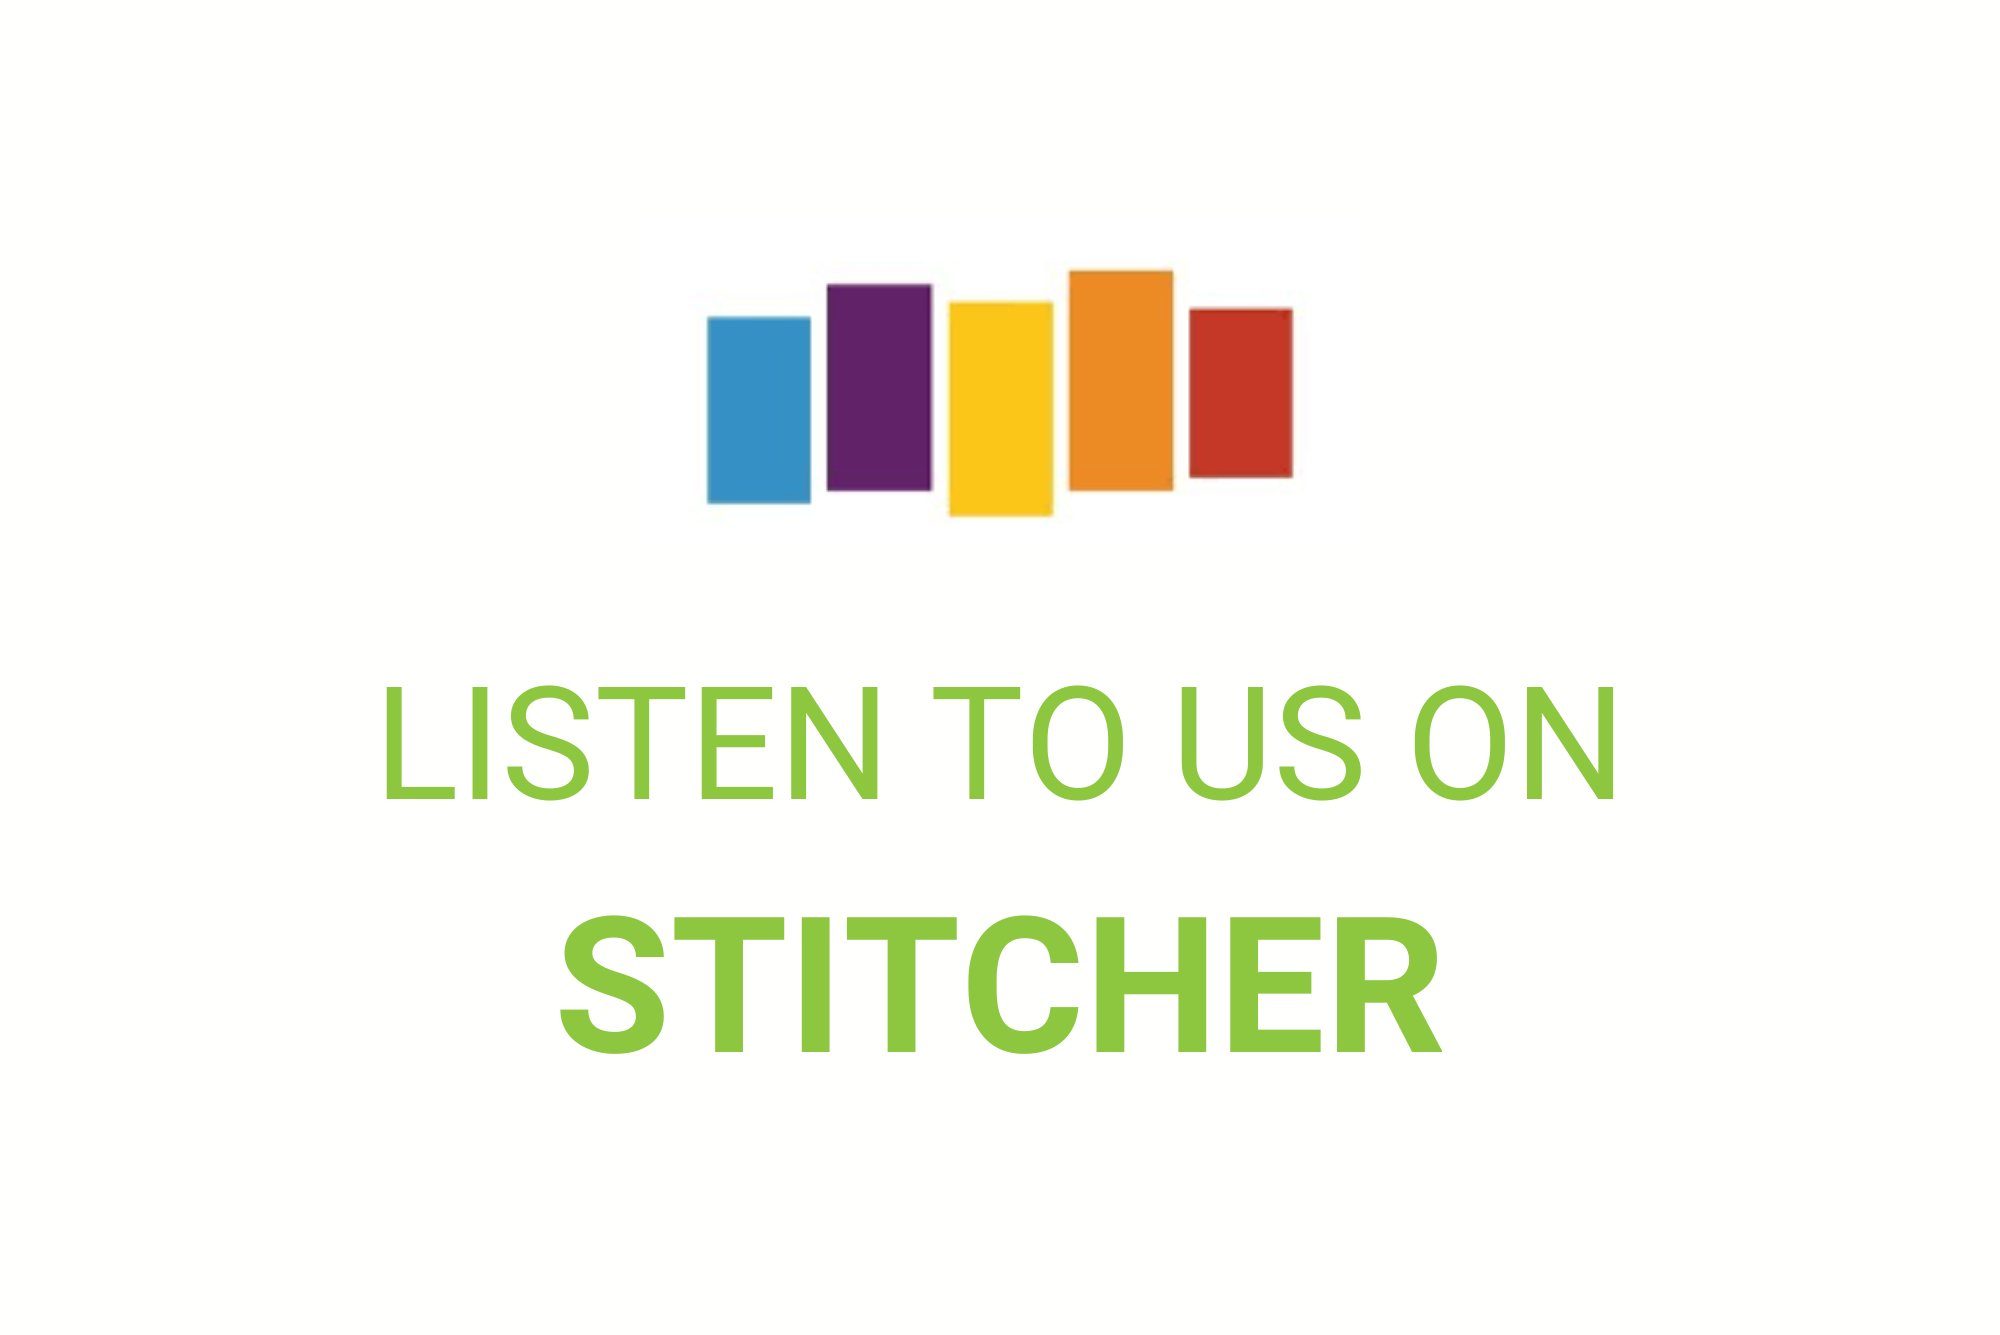 Listen to us on Stitcher.